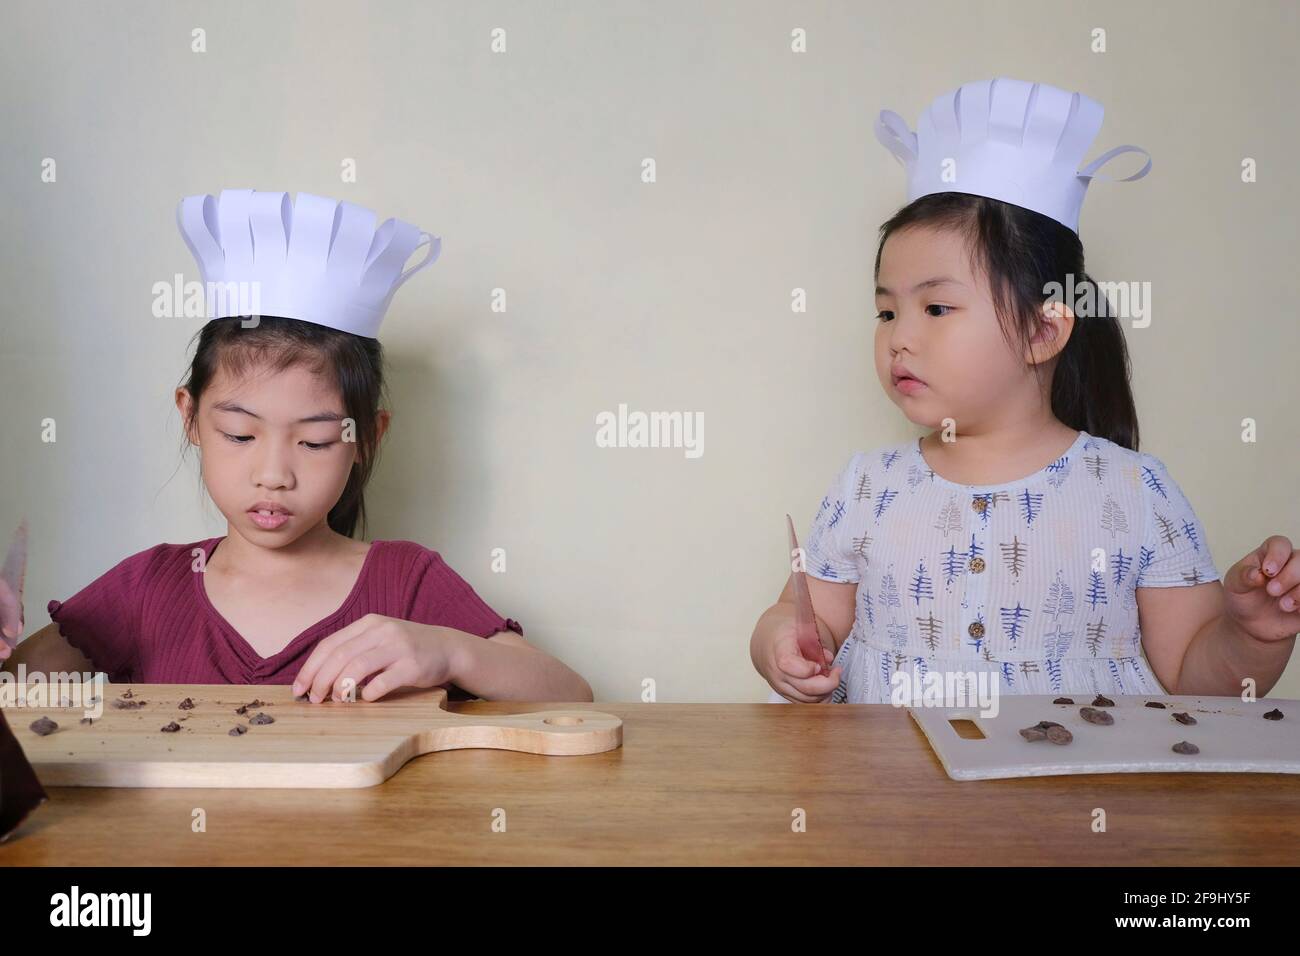 Deux jeunes sœurs asiatiques mignonnes, avec de jolis chapeaux de chef, apprennent à fabriquer des biscuits aux pépites de chocolat, en coupant du chocolat en petits morceaux avant de mixer Banque D'Images